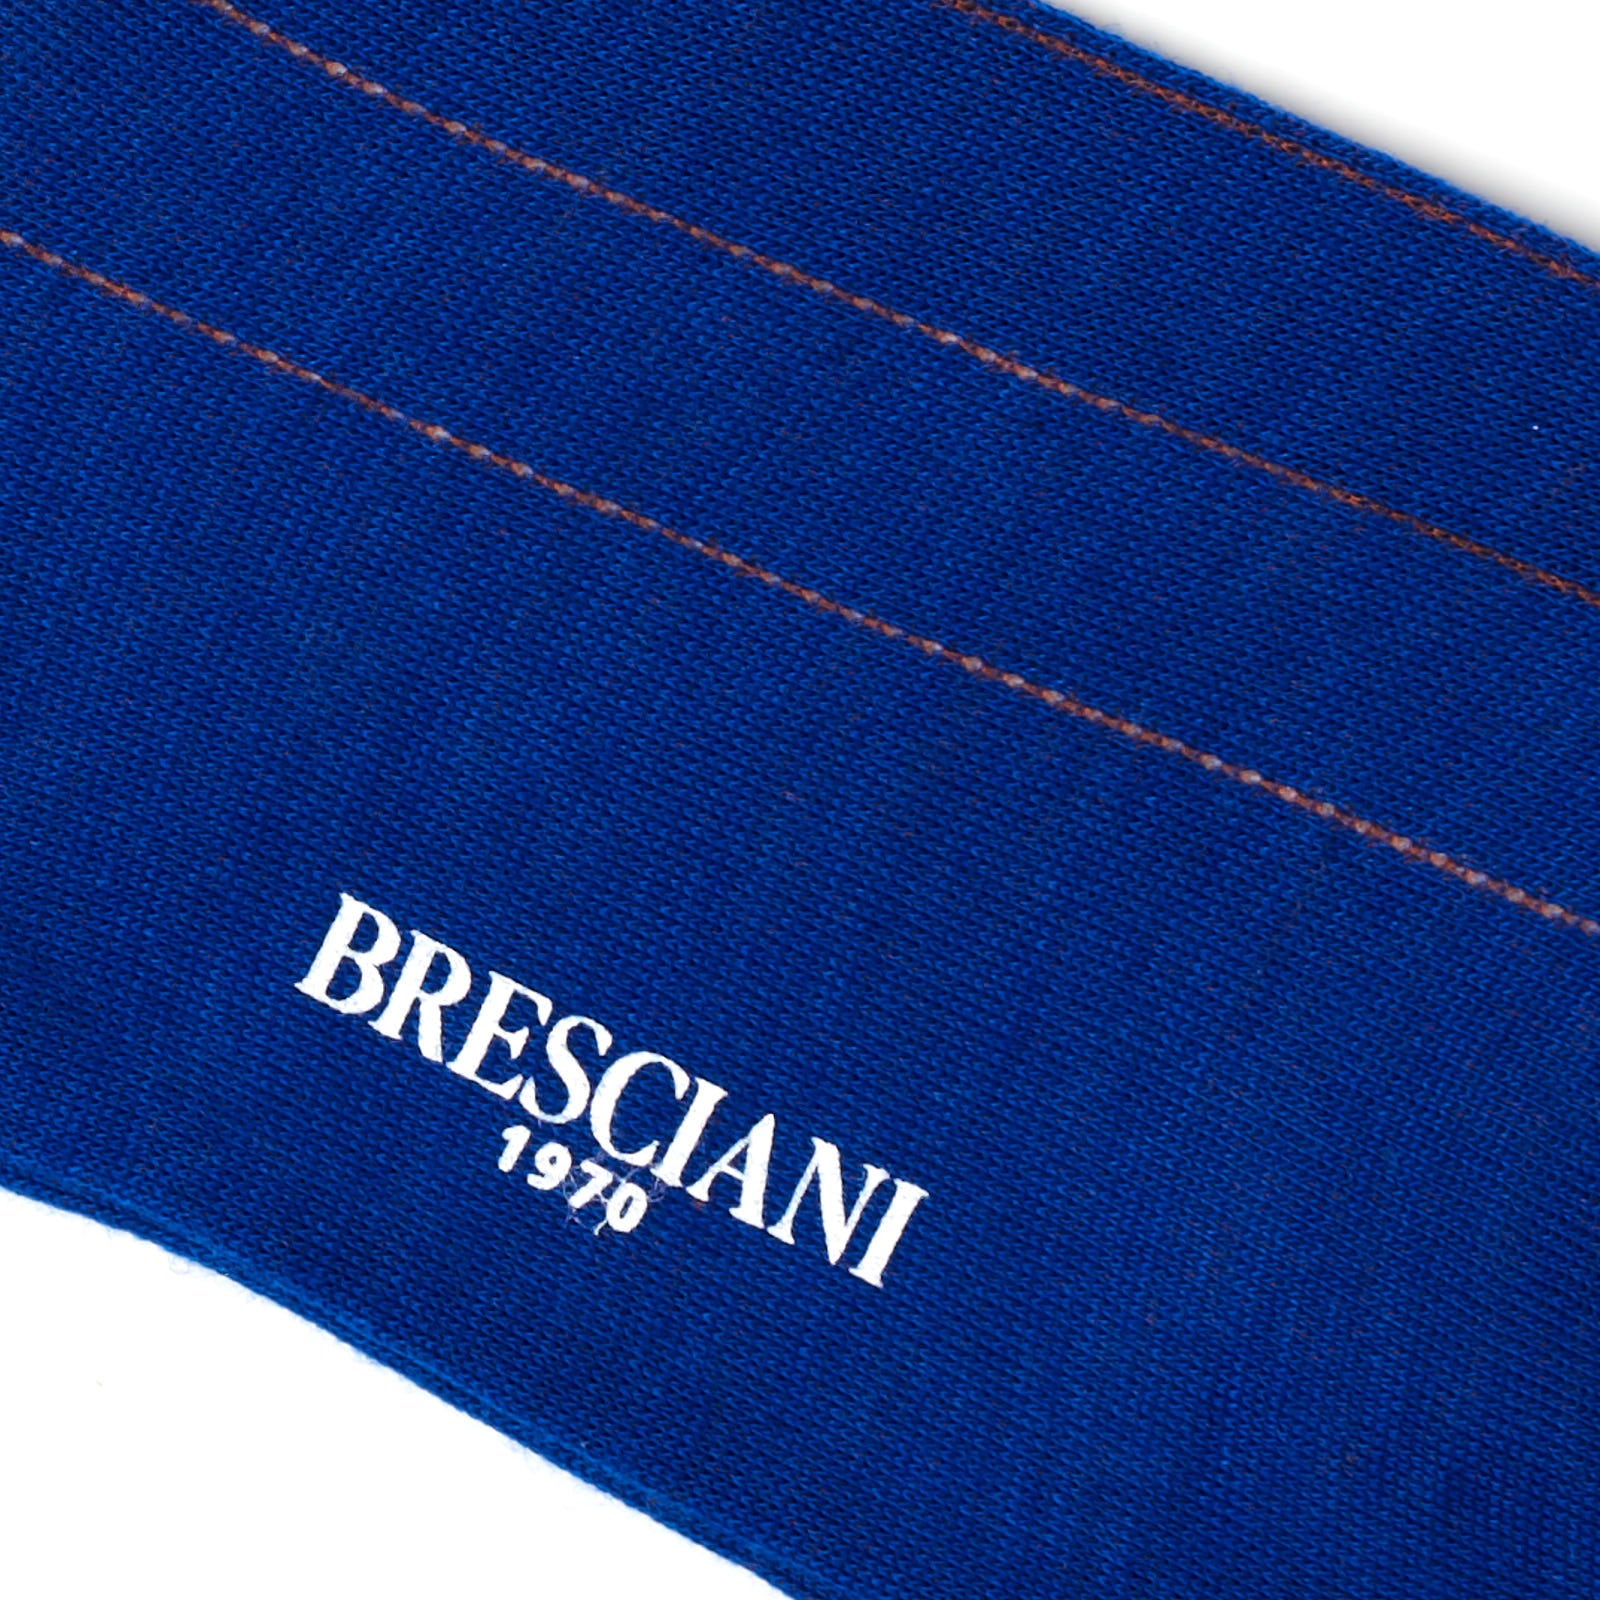 BRESCIANI Wool Pencil Striped Mid Calf Length Socks M-L BRESCIANI